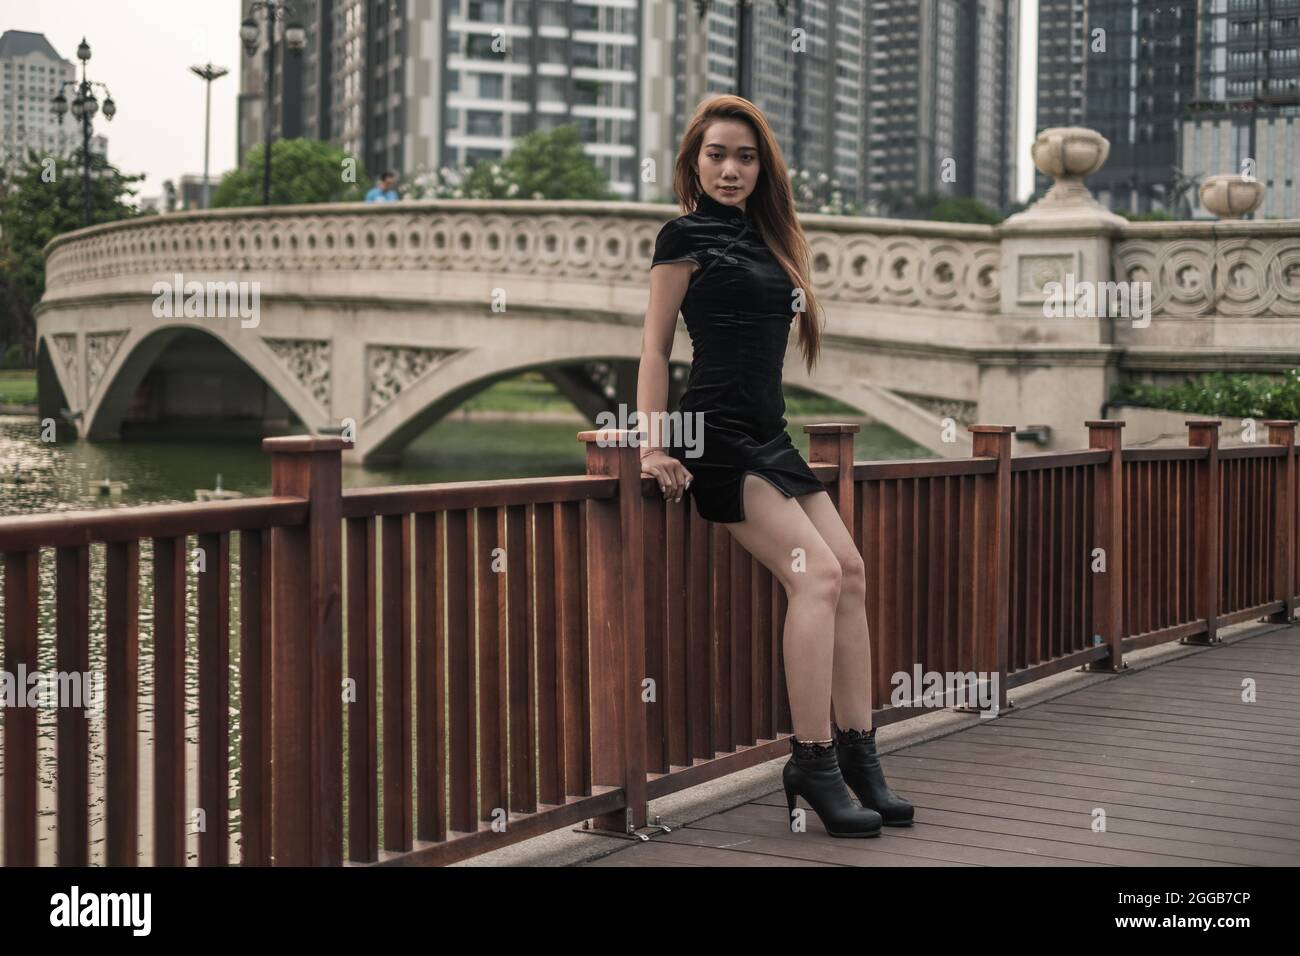 Belle jeune femme asiatique en robe noire mini debout près de la main courante dans le parc. Regarder l'appareil photo avec l'espace de copie. Penché sur la main courante Banque D'Images